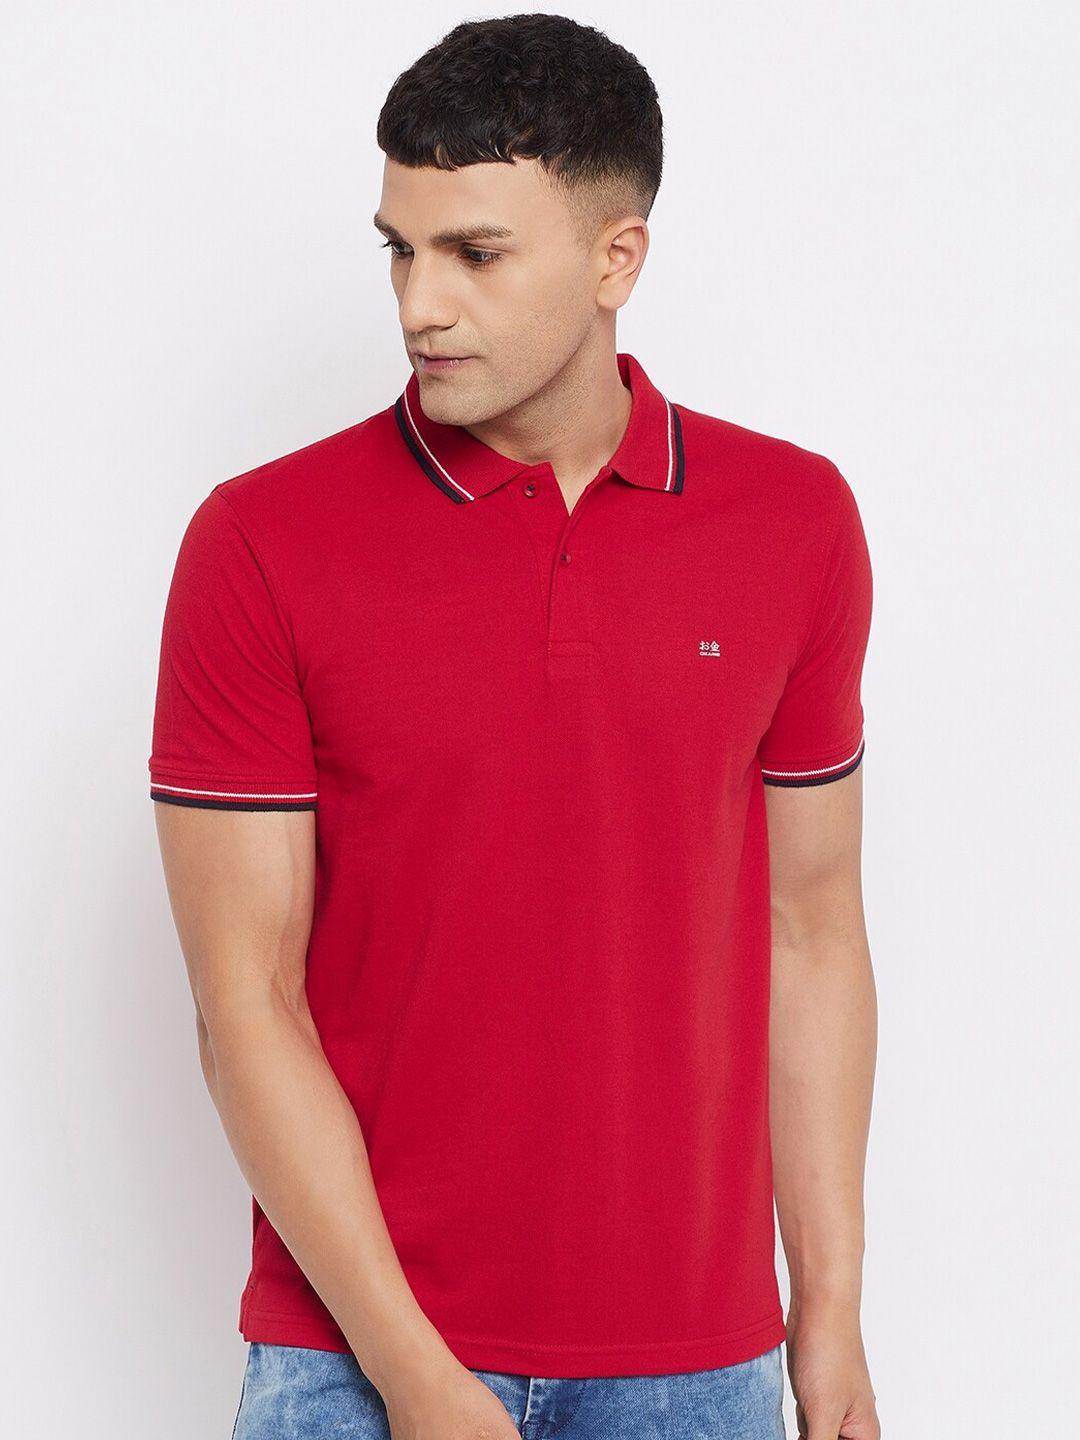 okane-men-red-polo-collar-cotton-t-shirt